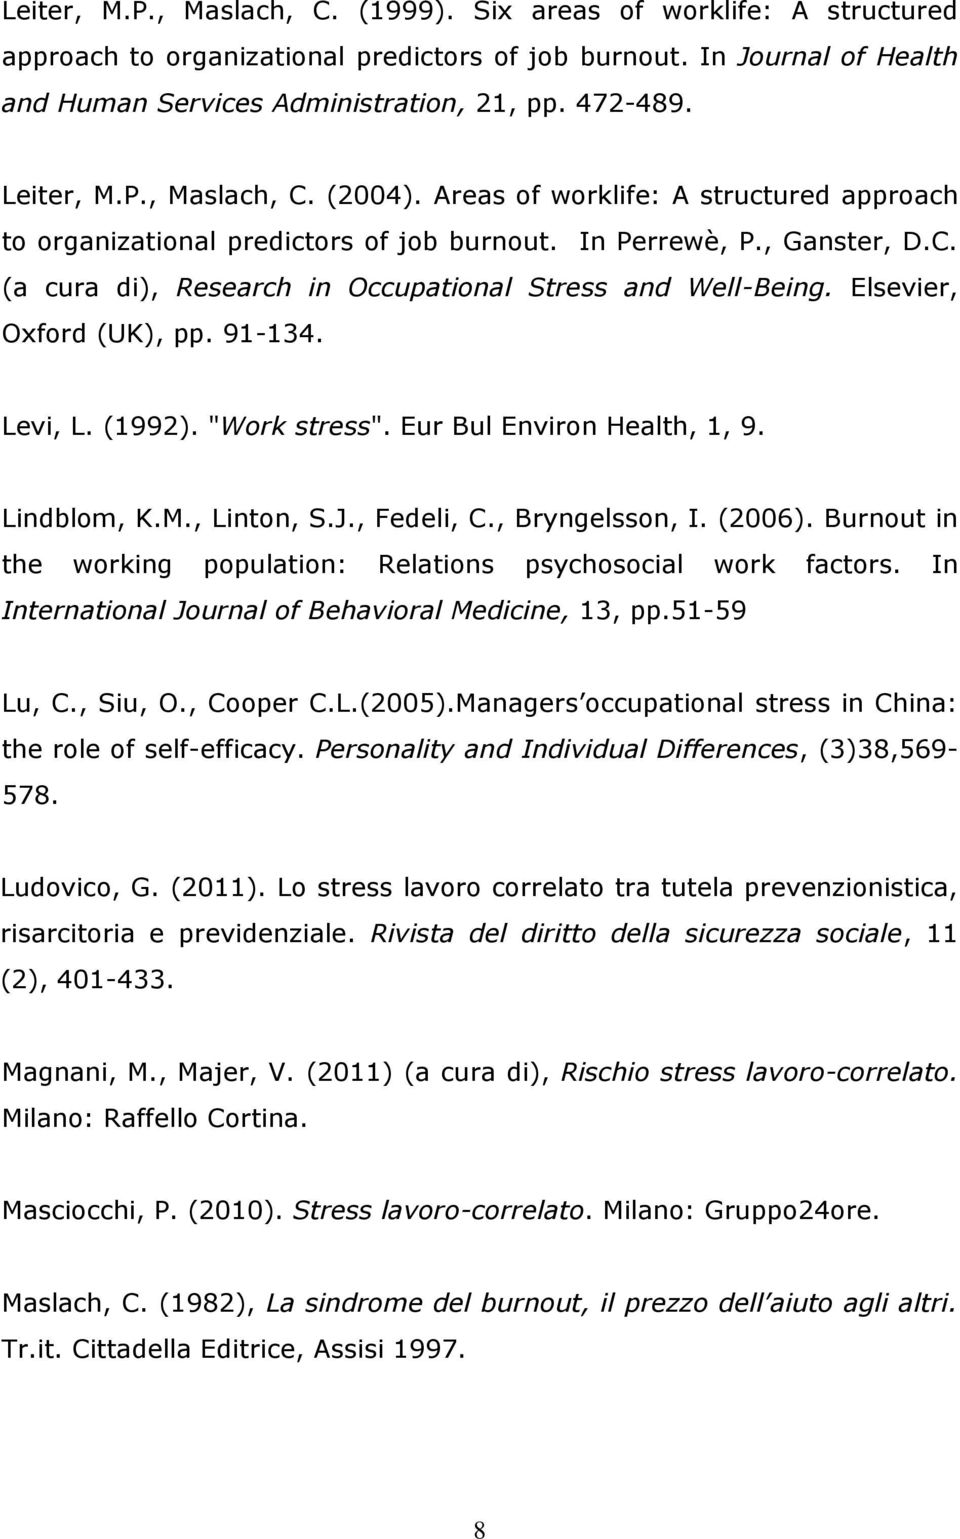 Elsevier, Oxford (UK), pp. 91-134. Levi, L. (1992). "Work stress". Eur Bul Environ Health, 1, 9. Lindblom, K.M., Linton, S.J., Fedeli, C., Bryngelsson, I. (2006).